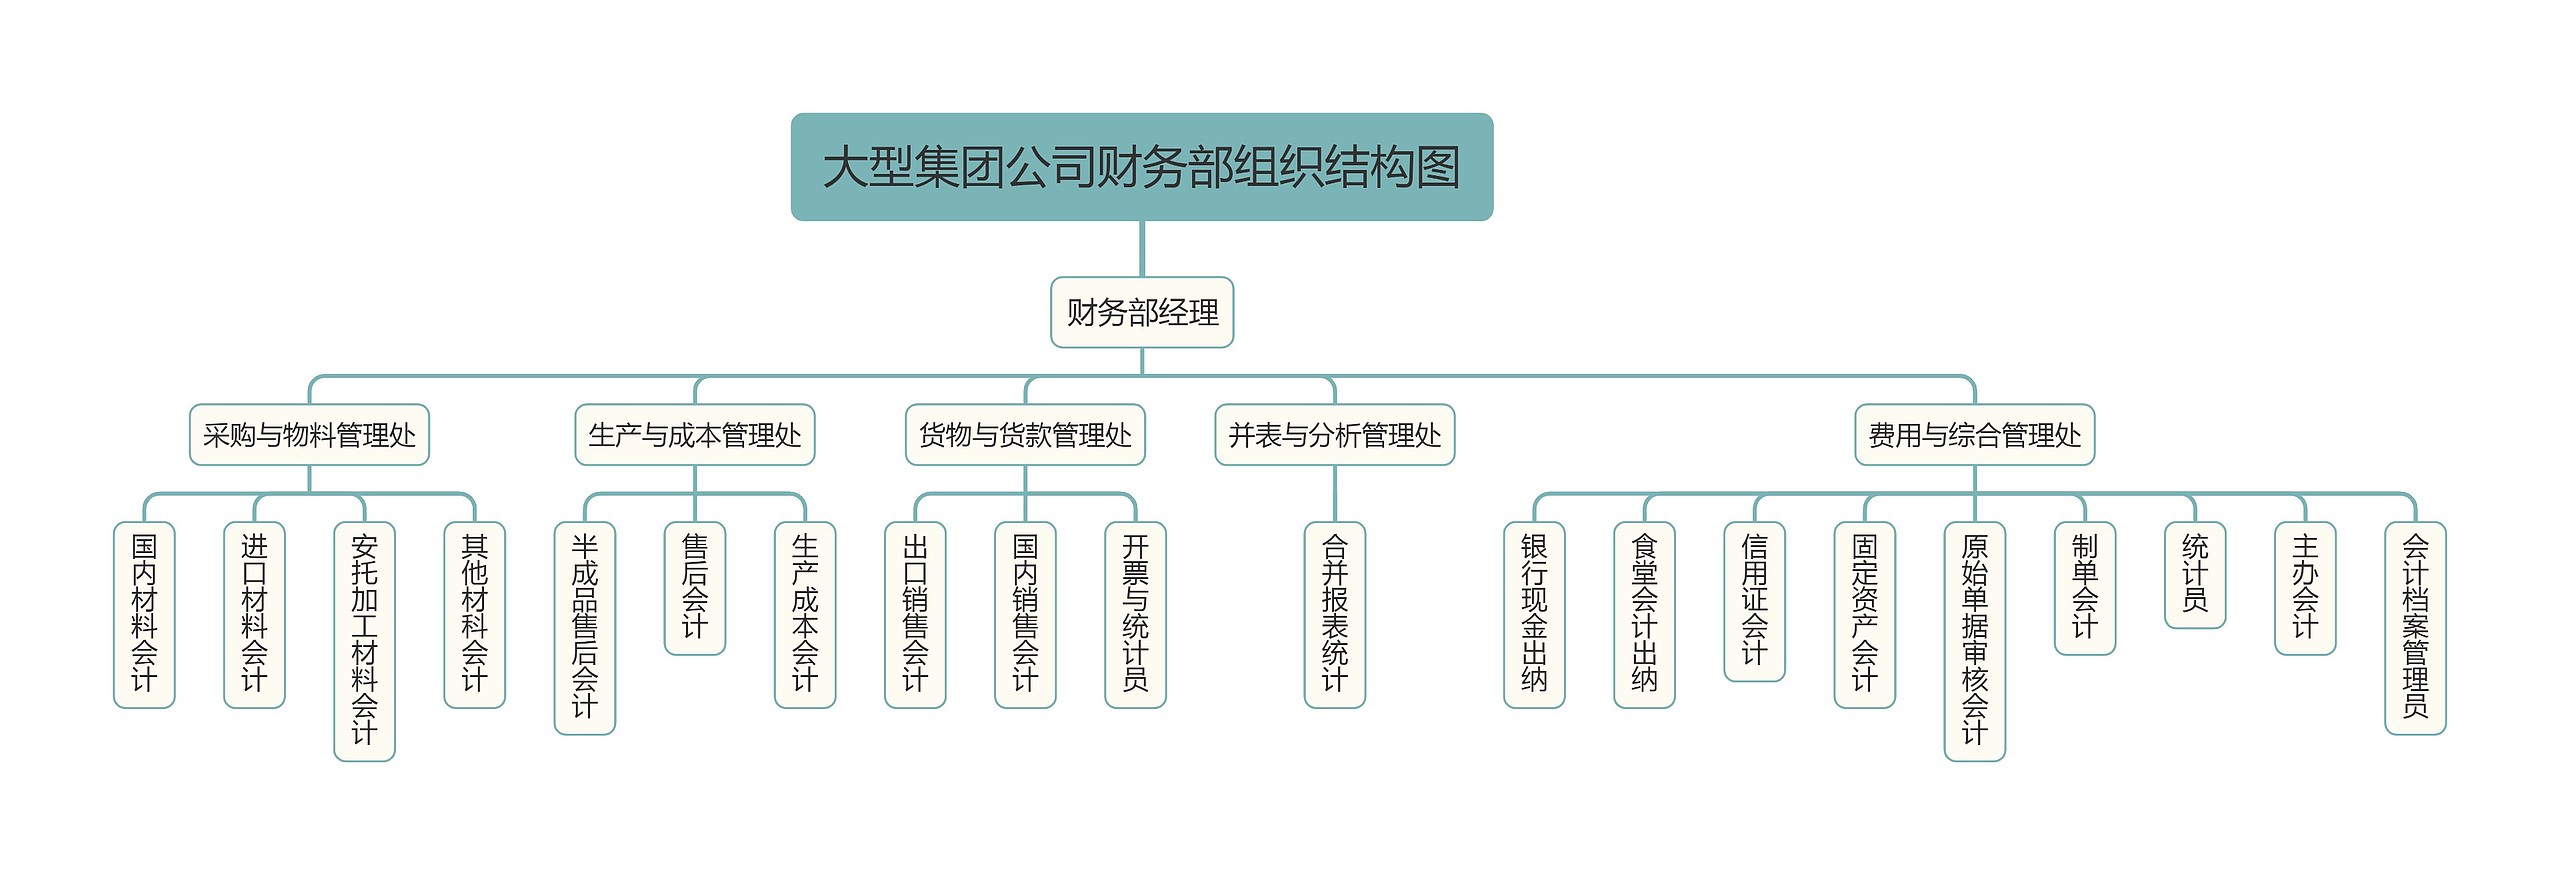 大型集团公司财务部组织结构图